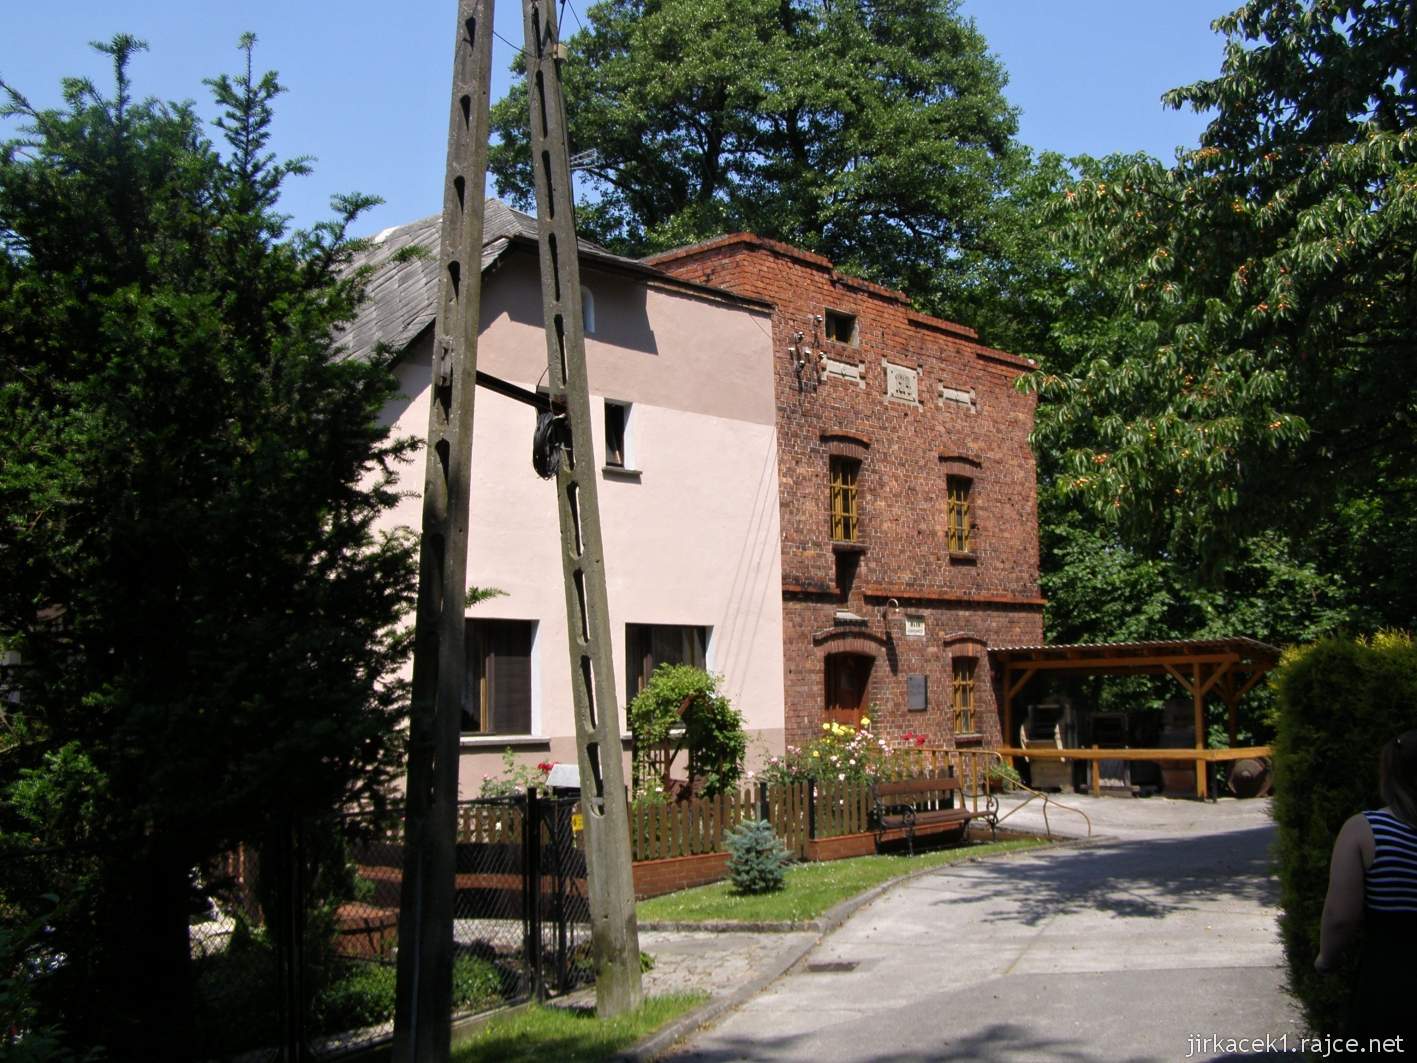 Tworków - Pawlikův mlýn (Zabytkowy mlyn w Tworkowie) - mlýn a obytný dům mlynáře